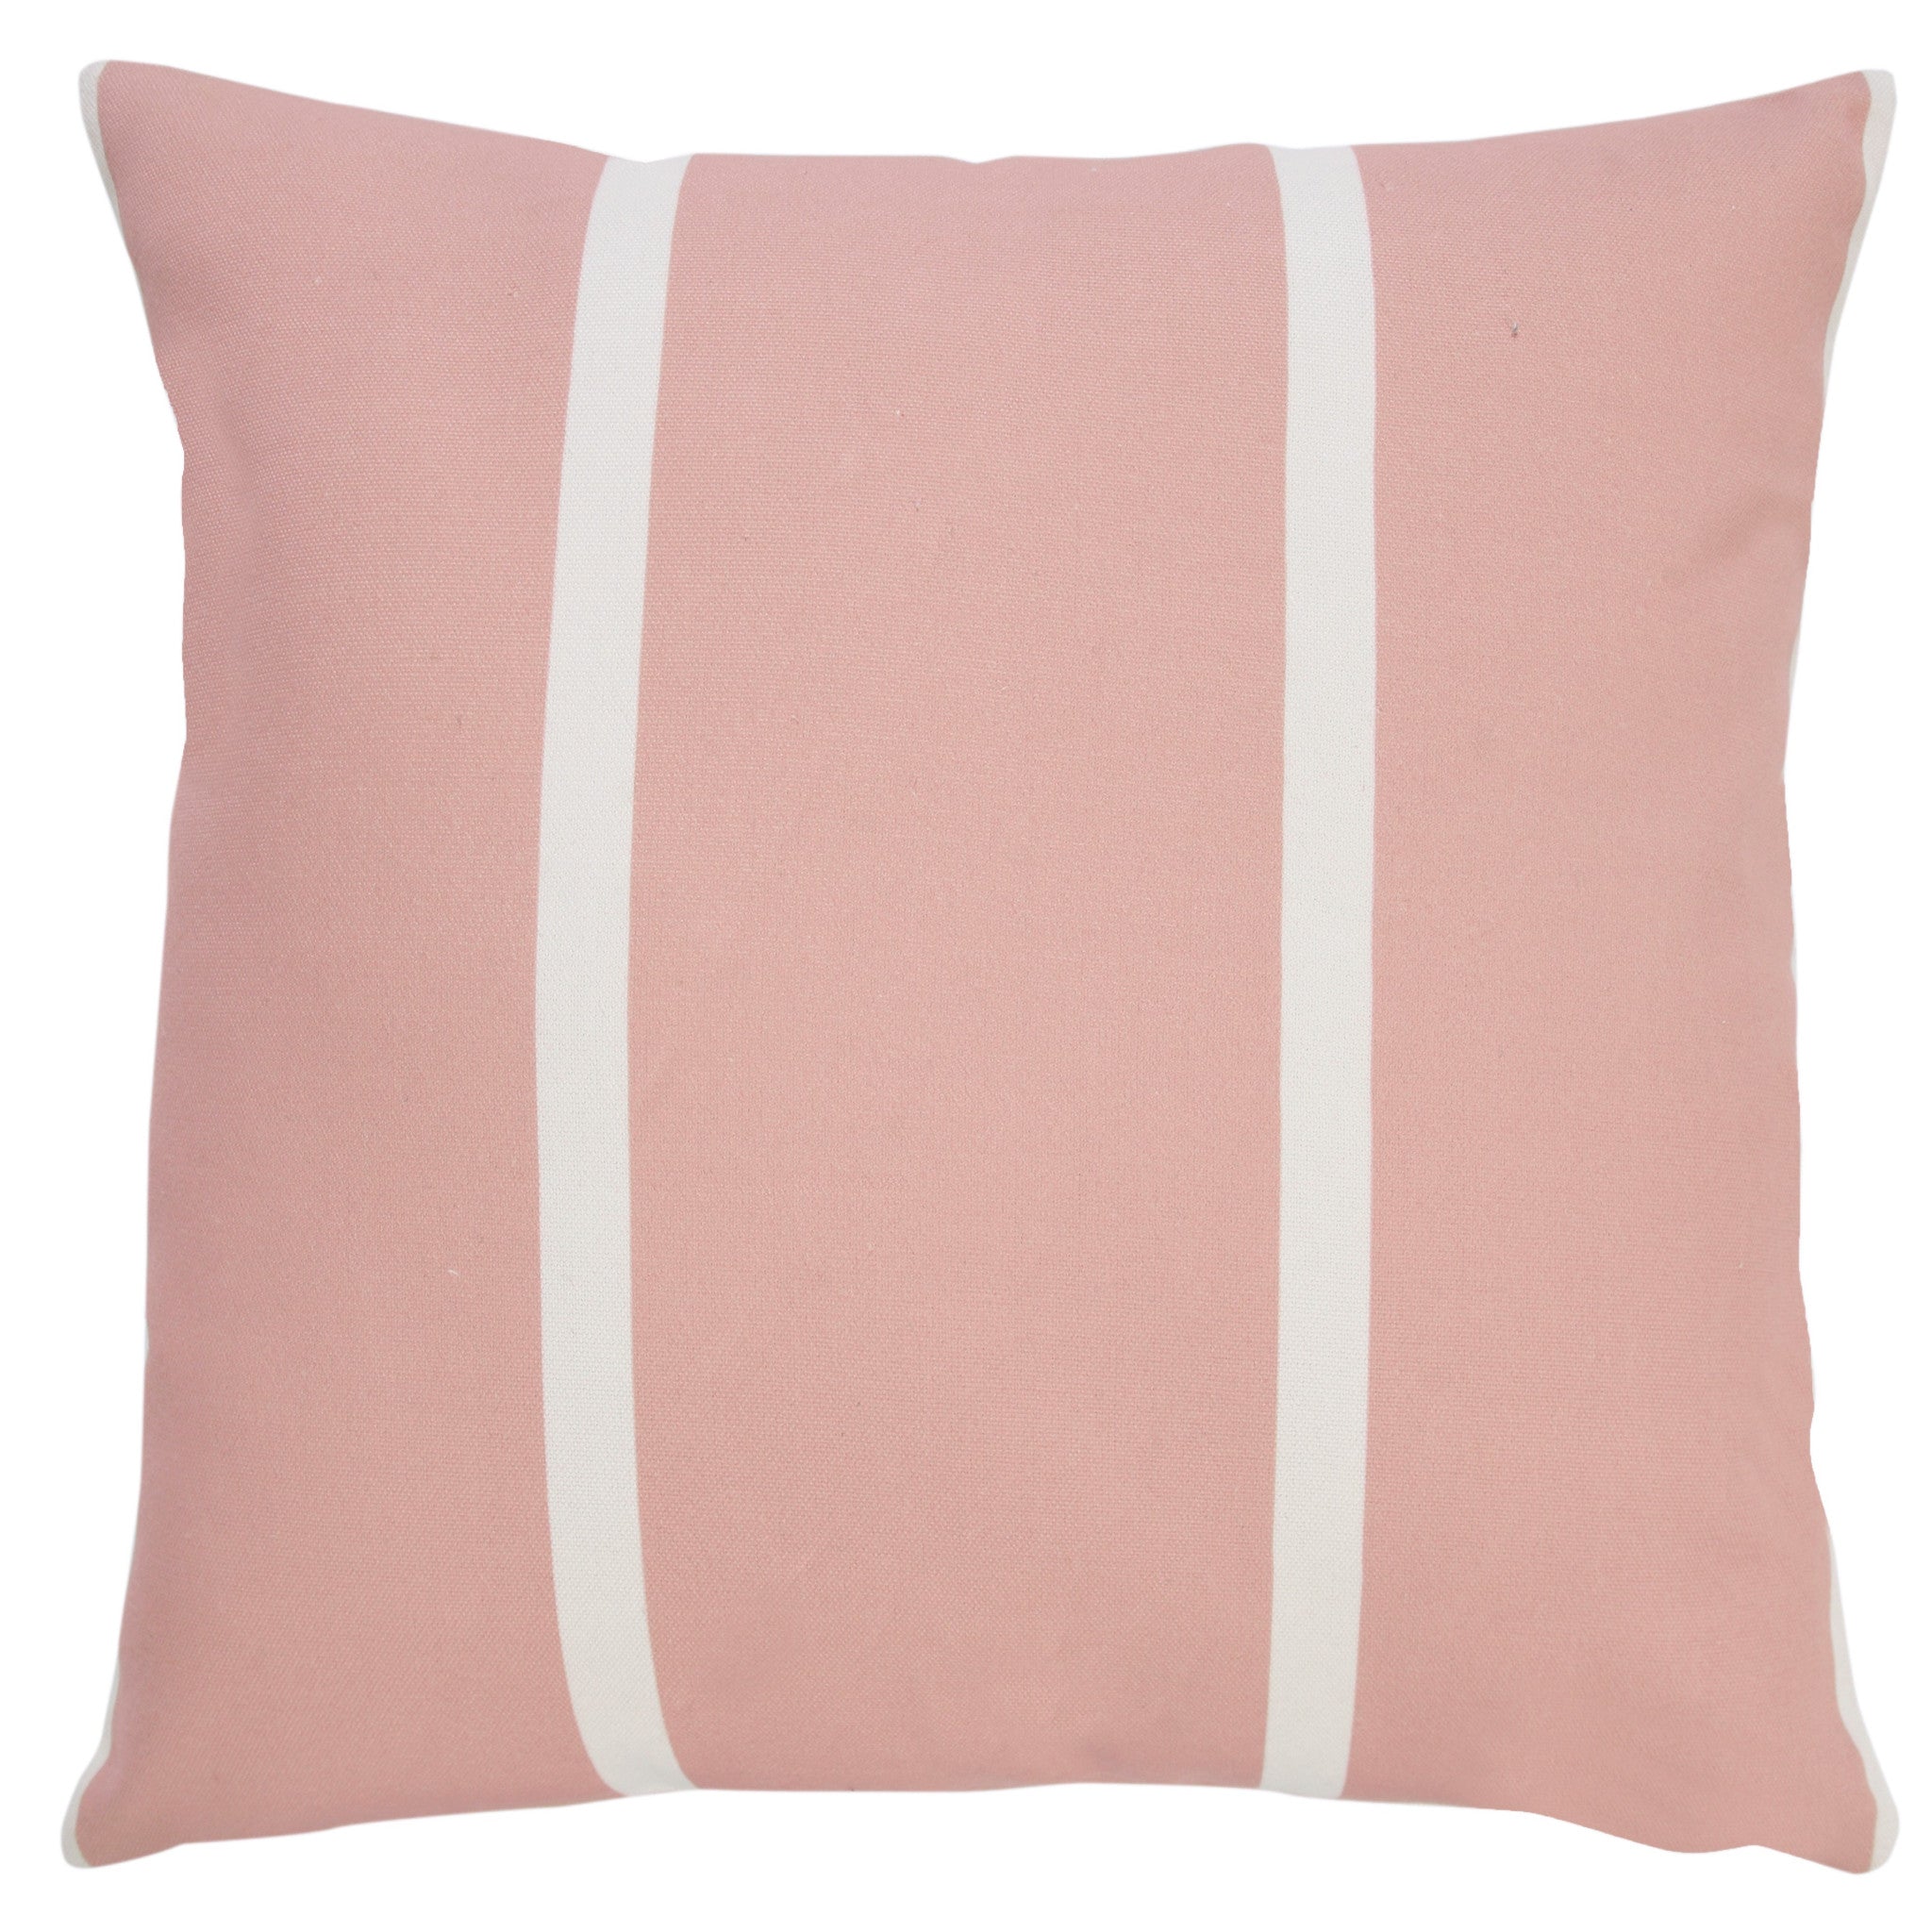 20" X 20" Pink Zippered Geometric Indoor Outdoor Throw Pillow